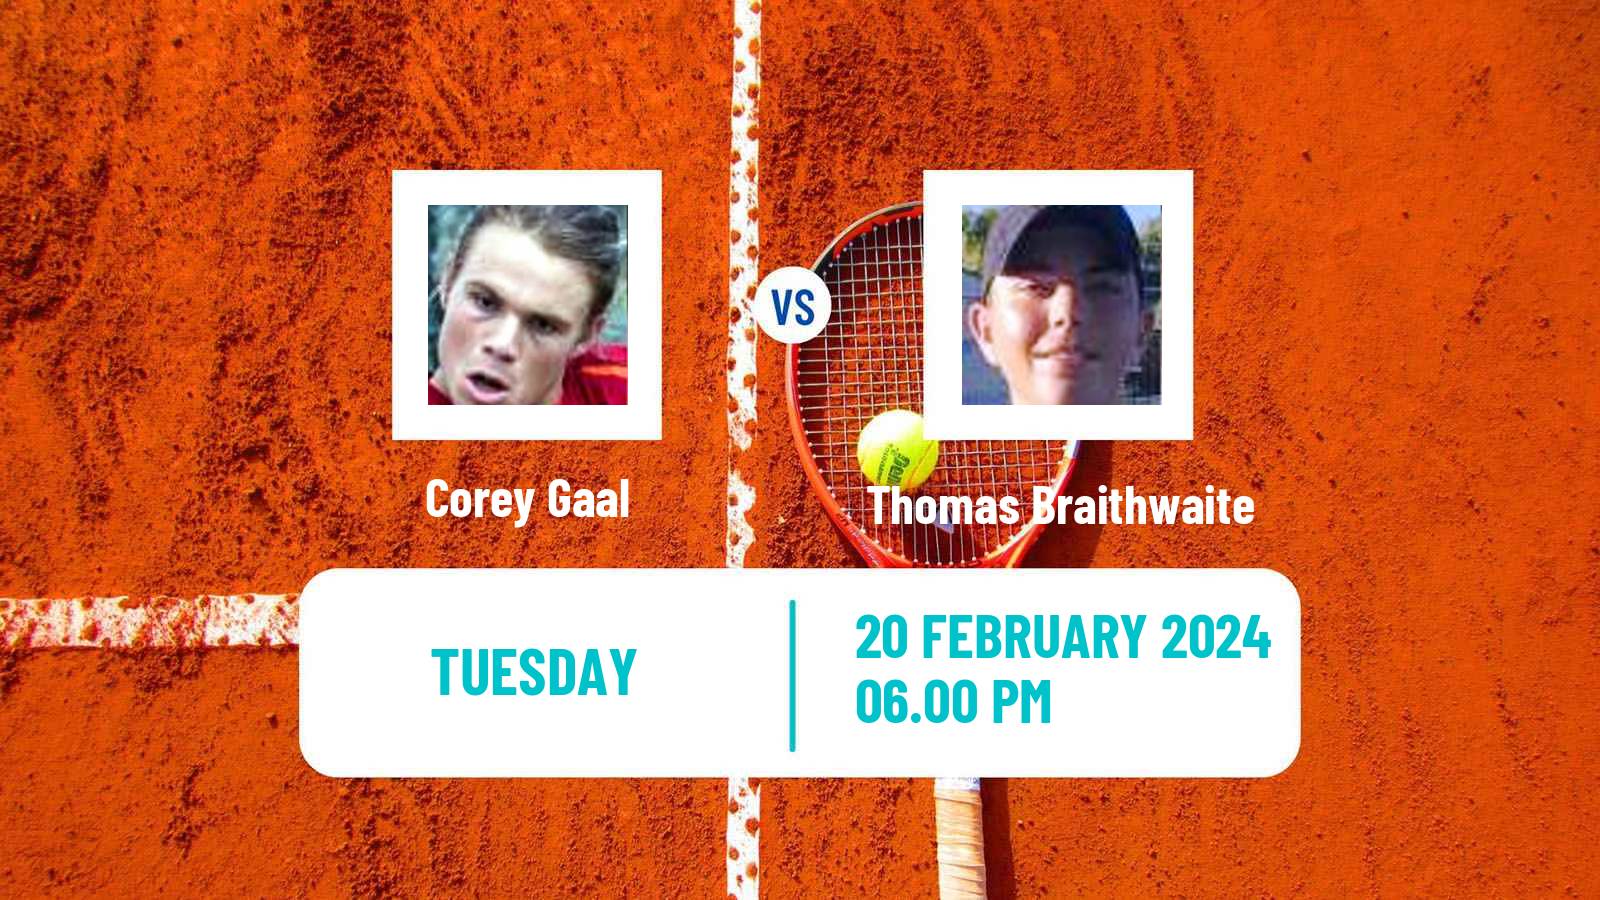 Tennis ITF M25 Traralgon Men Corey Gaal - Thomas Braithwaite